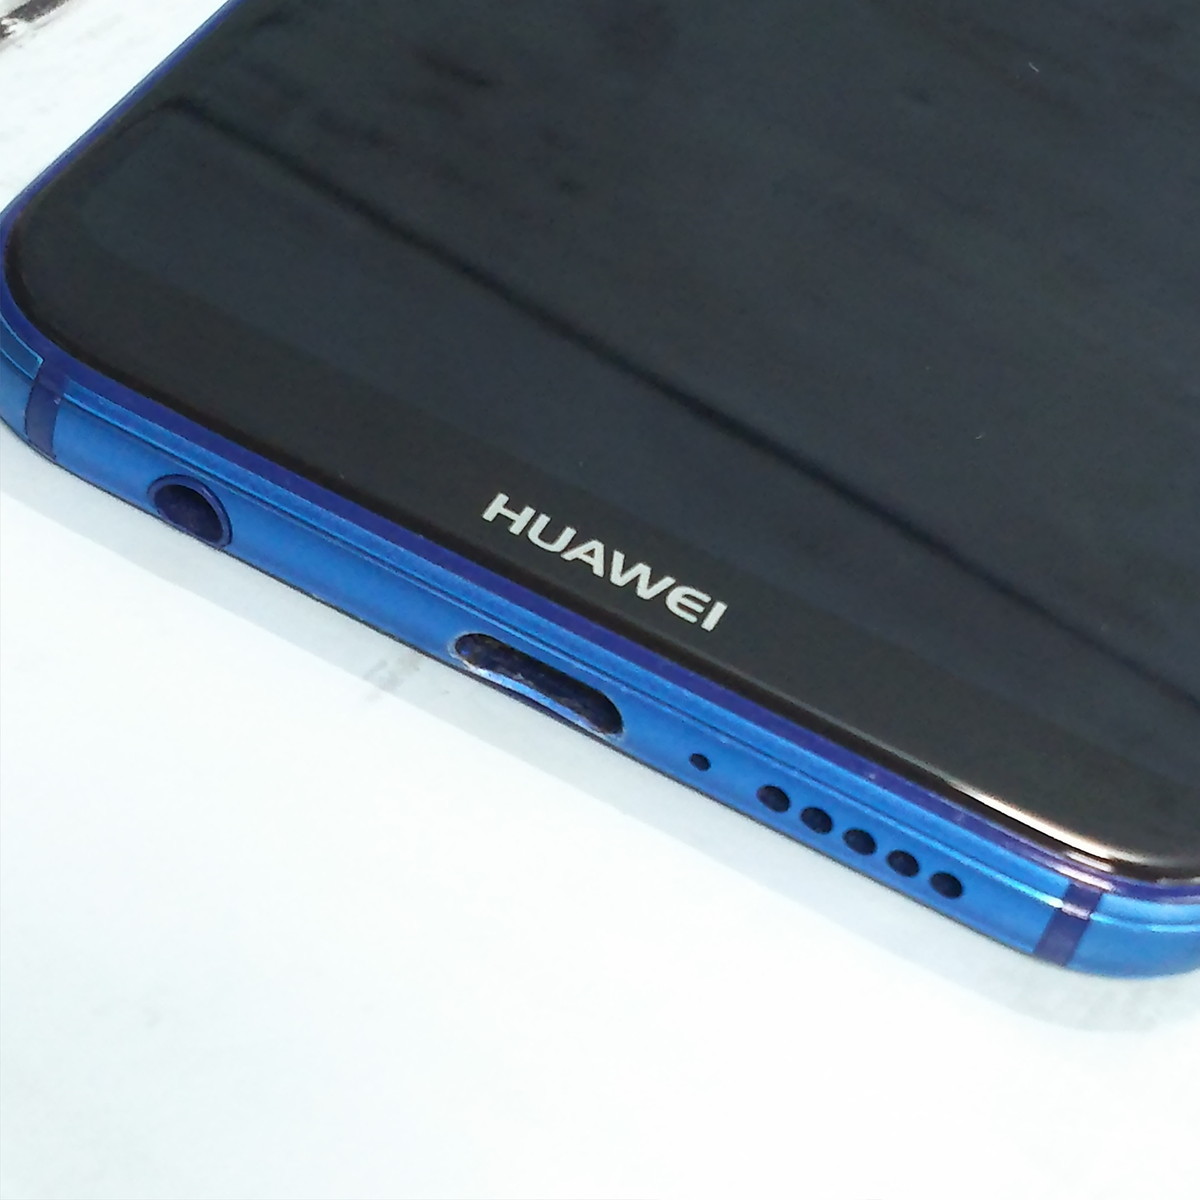 Huawei Y!mobile Huawei P20 lite ANE-LX2J (HWSDA2) クラインブルー 本体 白ロム SIMロック解除済み SIMフリー 871256_画像6